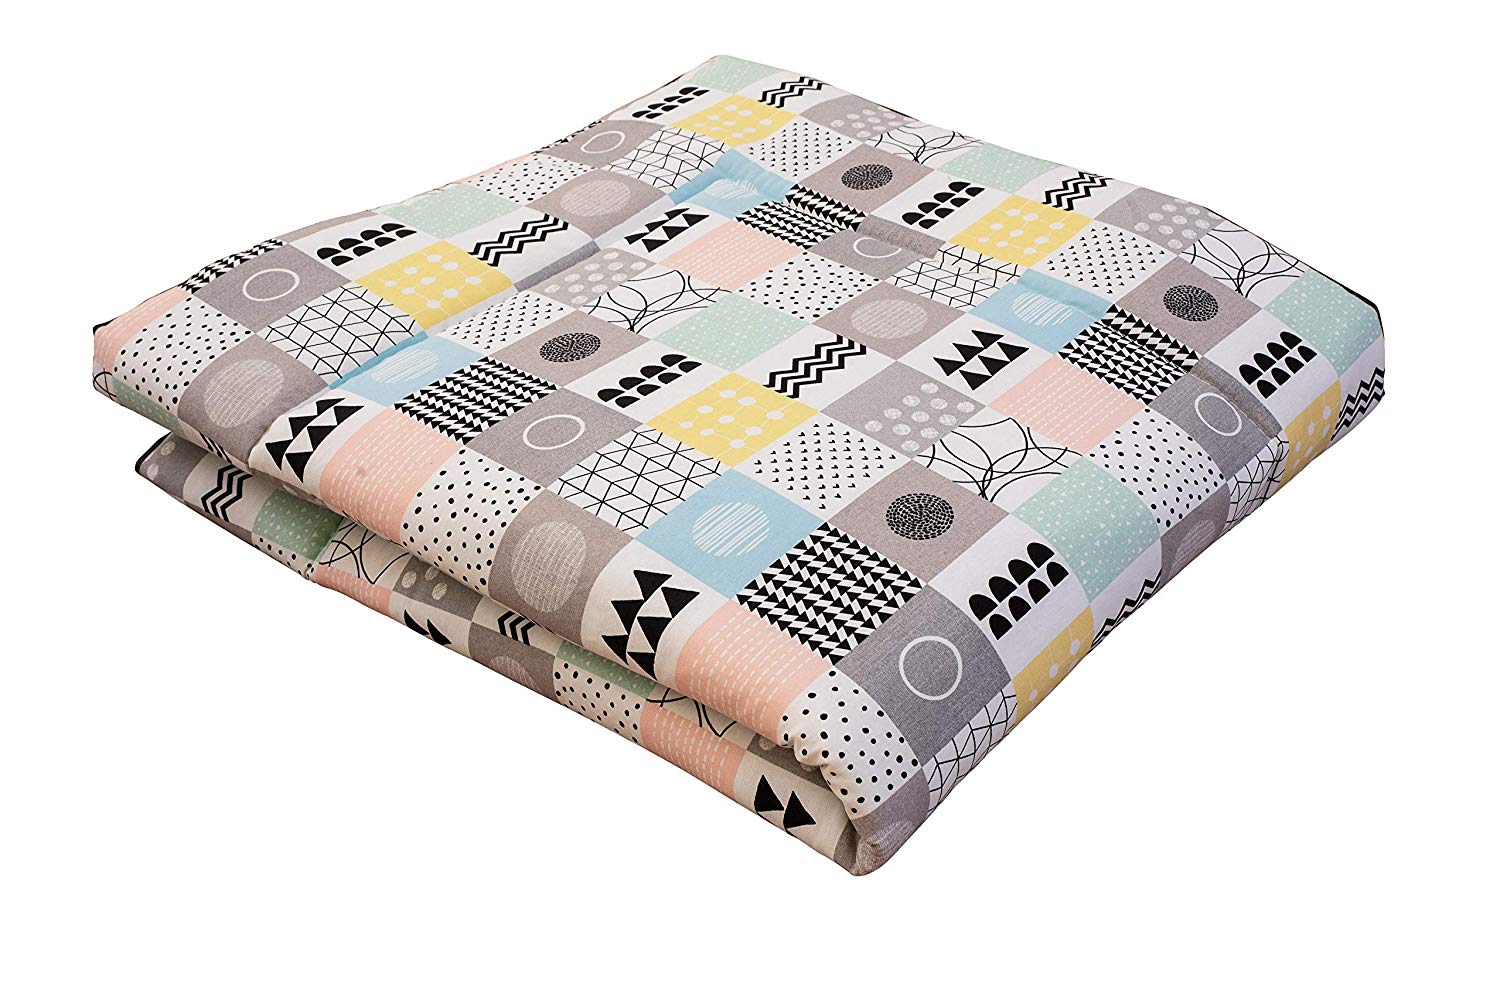 Ideenreich 2391 King Crawling Blanket 135 x 150 cm, Multi-Colour